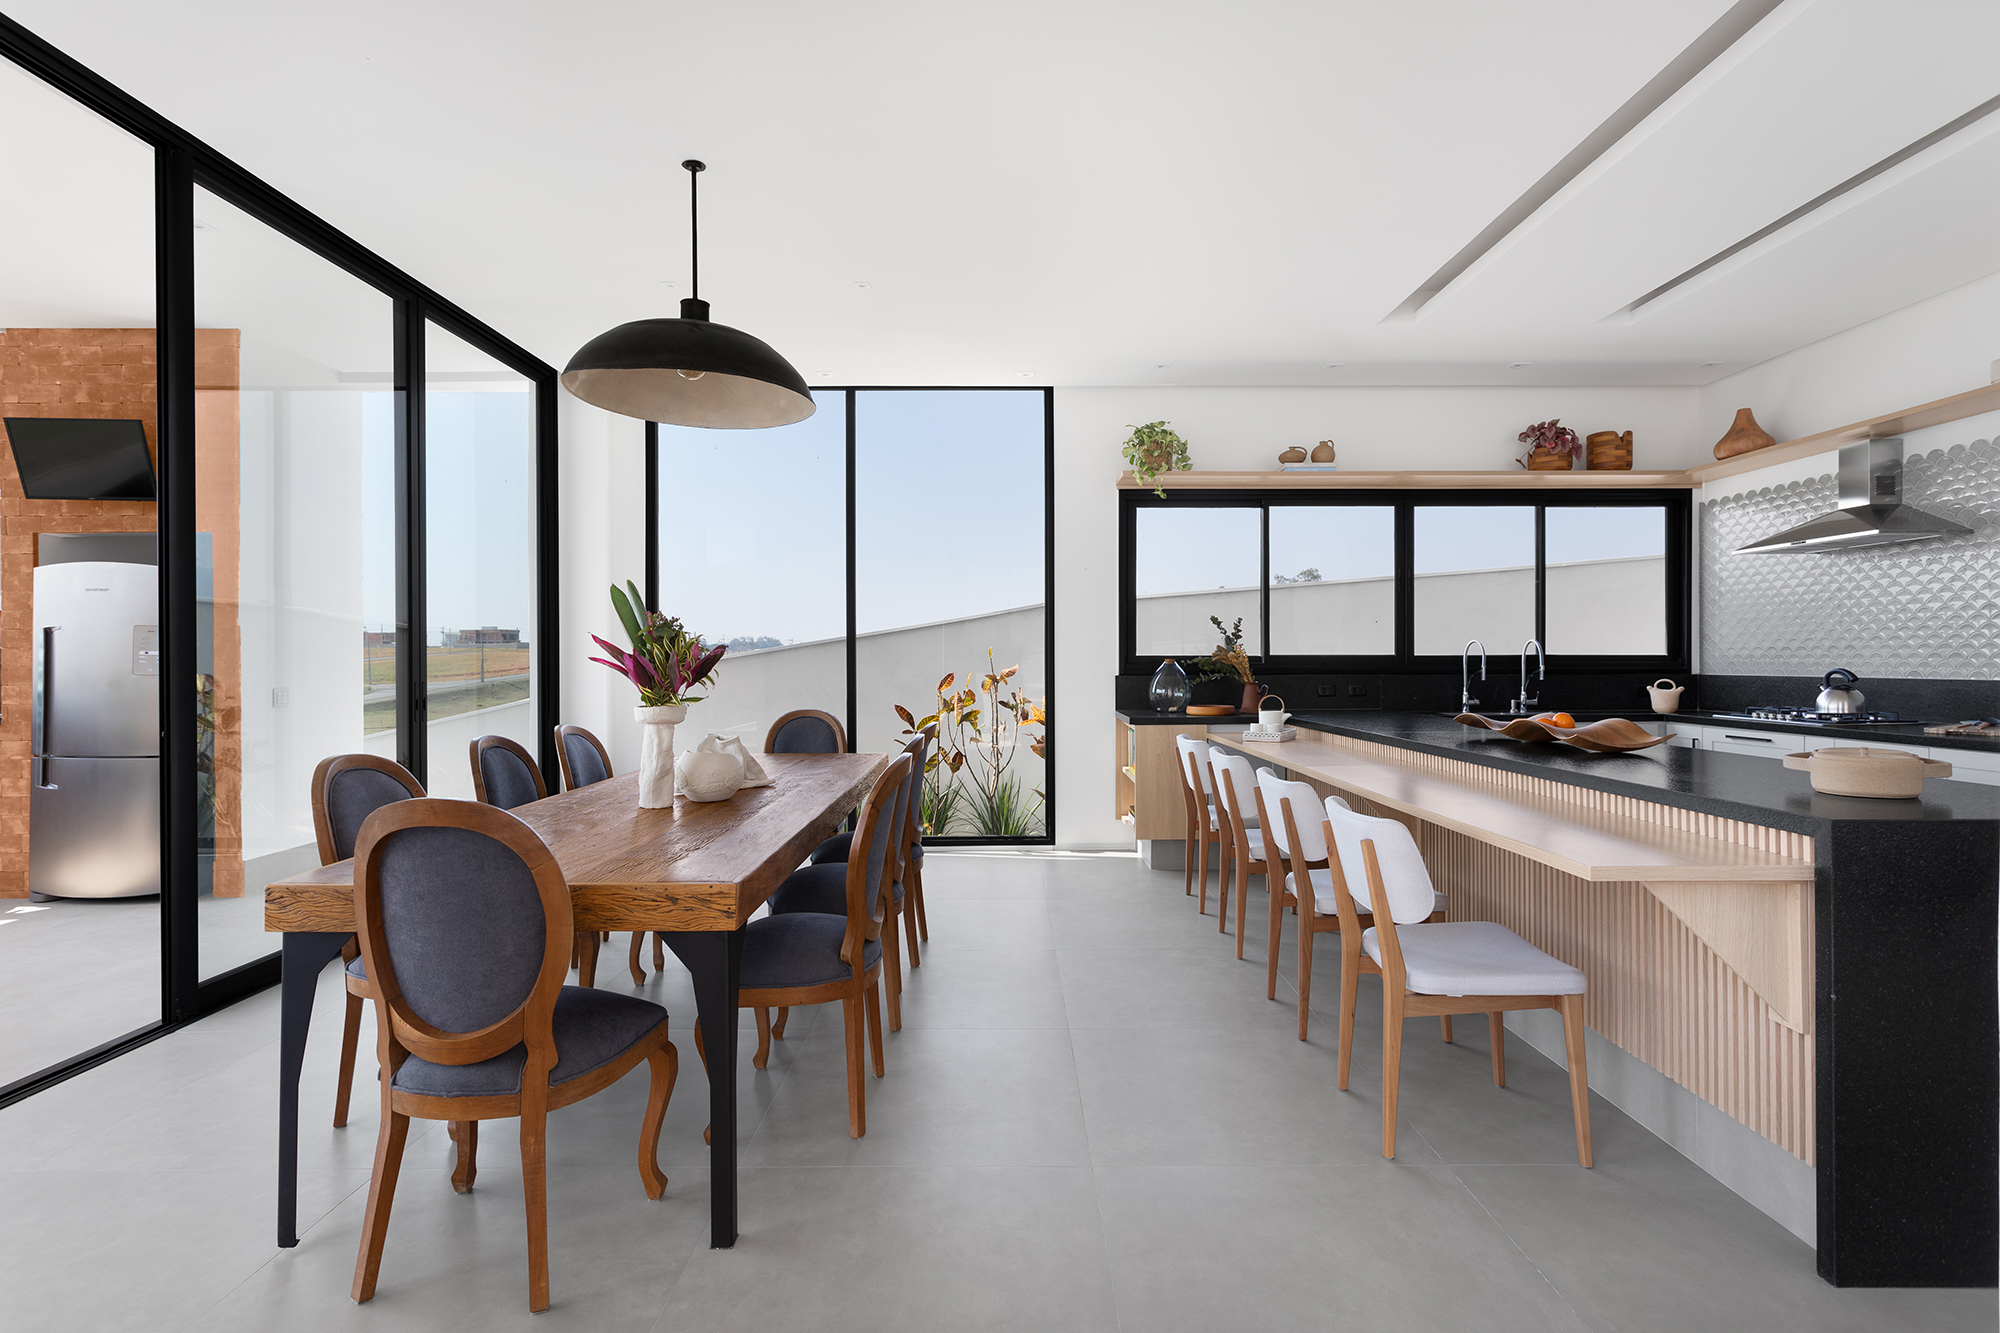 Casa de 435 m² com vista para a Serra possui piscina em formato diagonal. Projeto de Vivi Cirello. Na foto, cozinha com bancada ripada e frontão metálico.